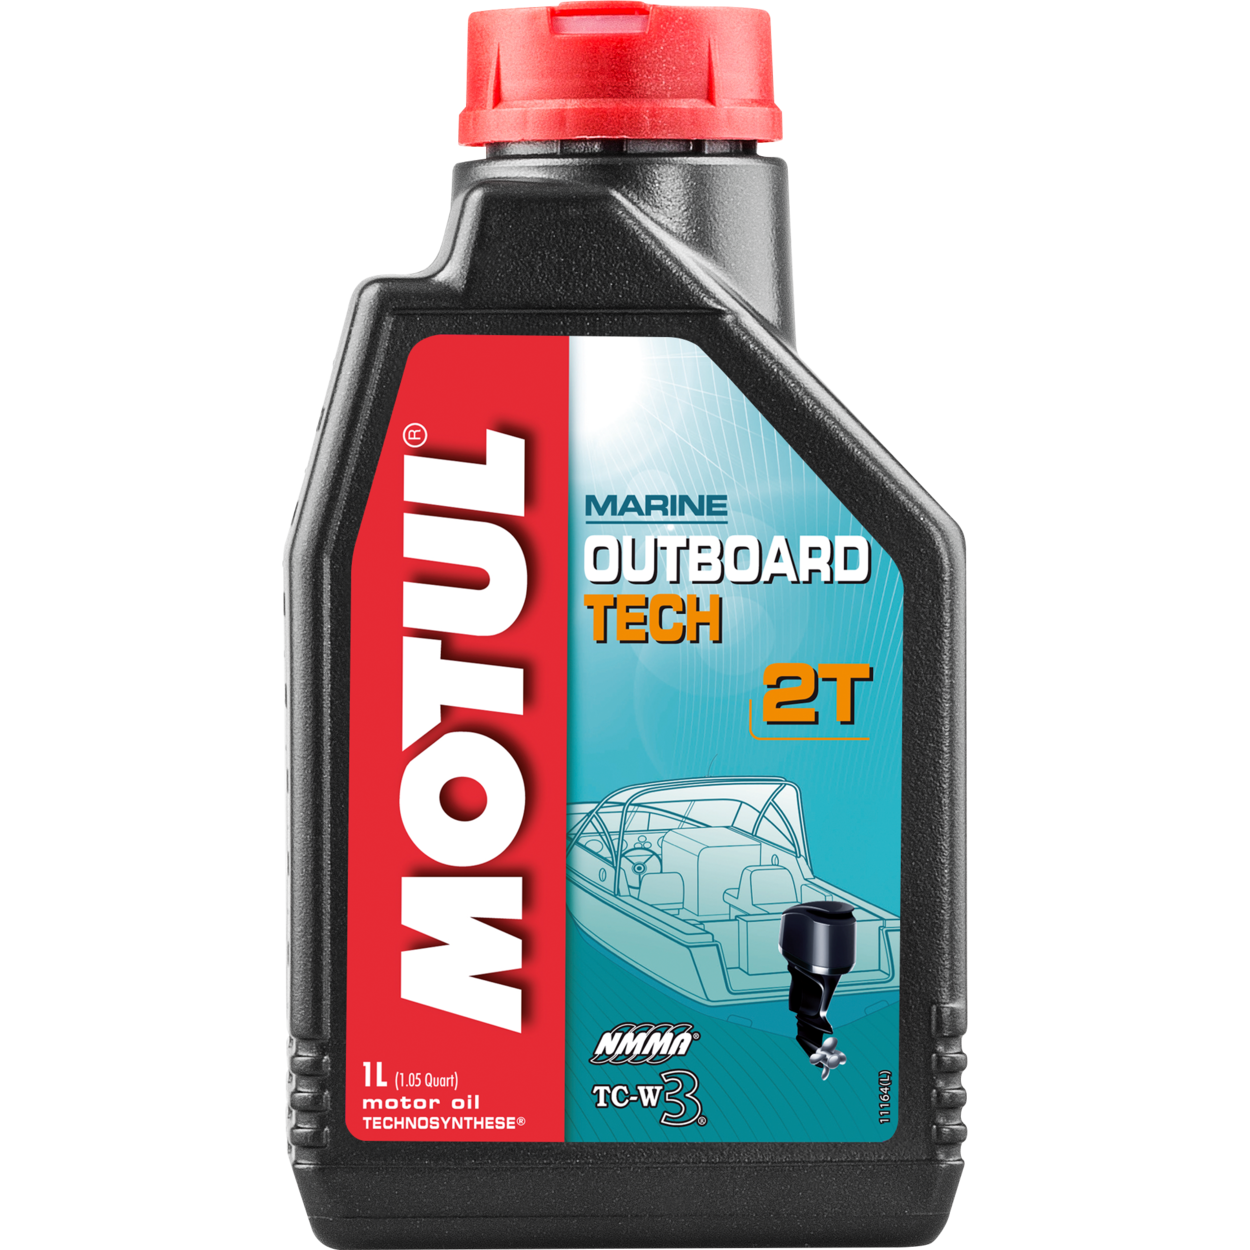 Моторное масло Motul Outboard TECH 2T, Смазочные материалы для водного транспорта - фото в магазине СарЗИП